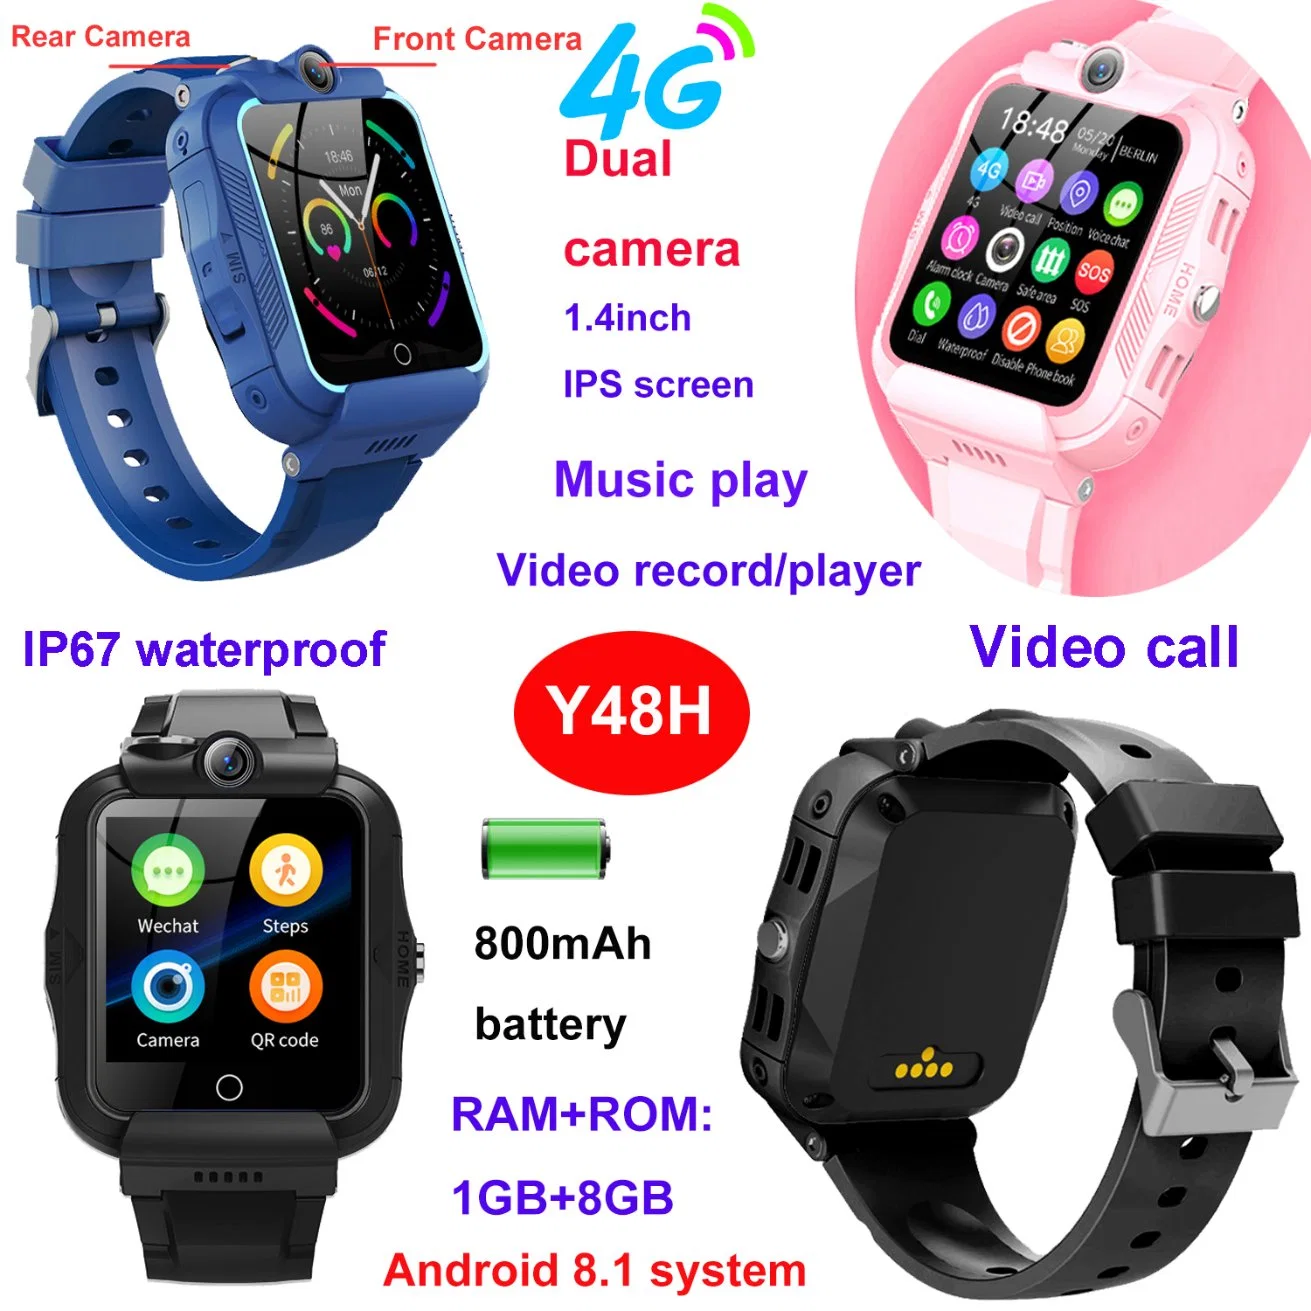 Großhandel 4G Handy Kinder Sicherheit GPS Smart Tracker Watch Telefon für Kinder Jungen Mädchen mit Dual-Kamera-Videoanruf Y48H